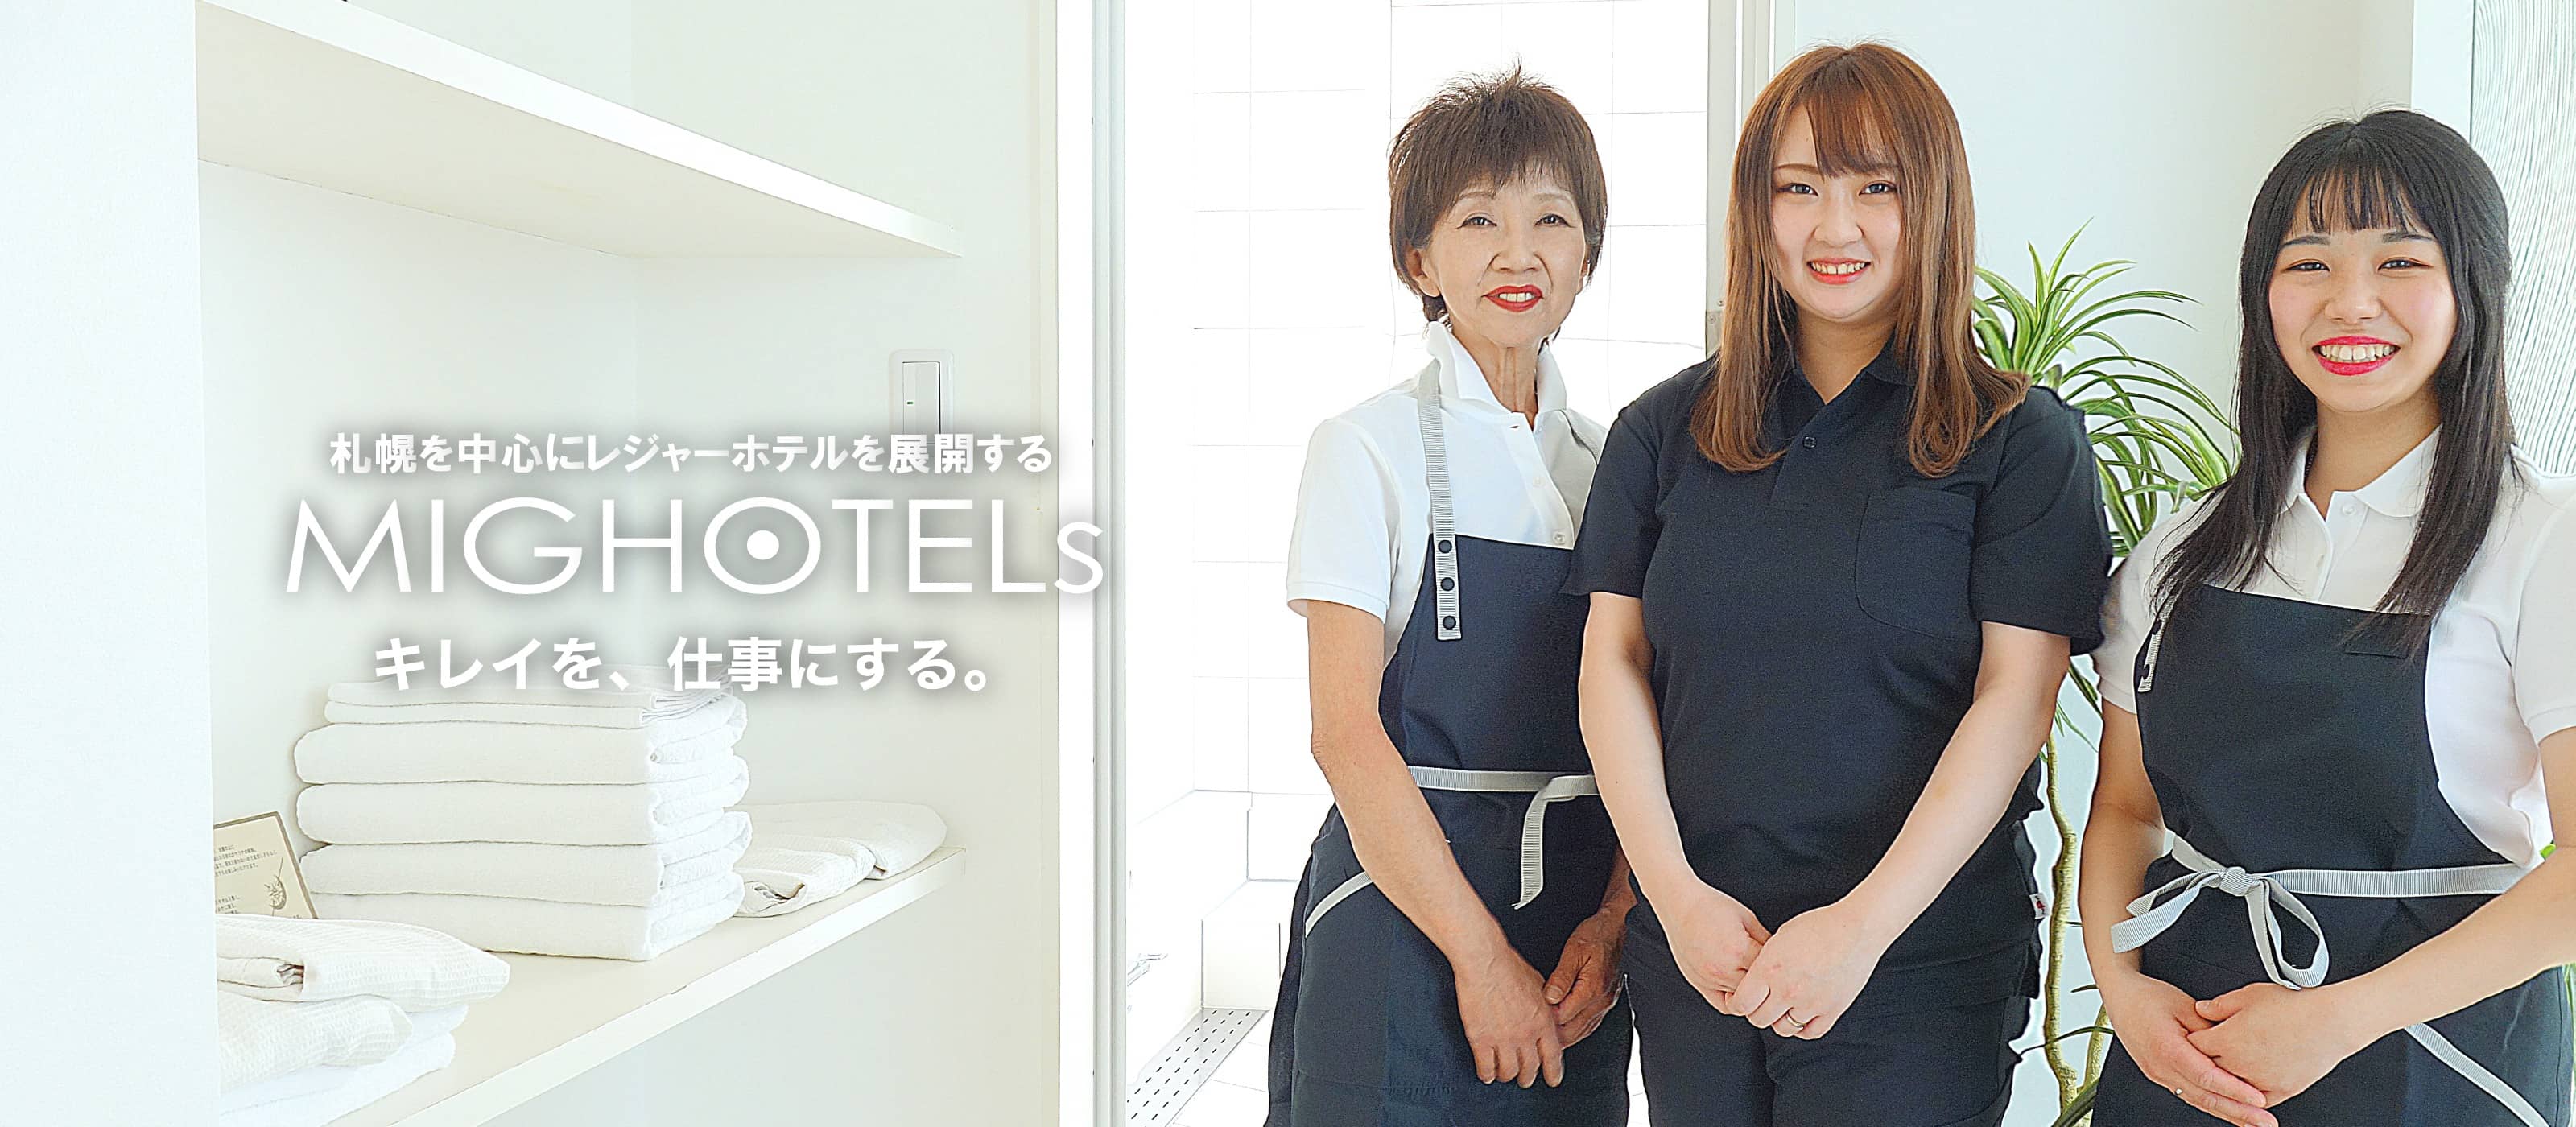 札幌を中心にレジャーホテルを展開する MIG HOTELs キレイを、仕事にする。